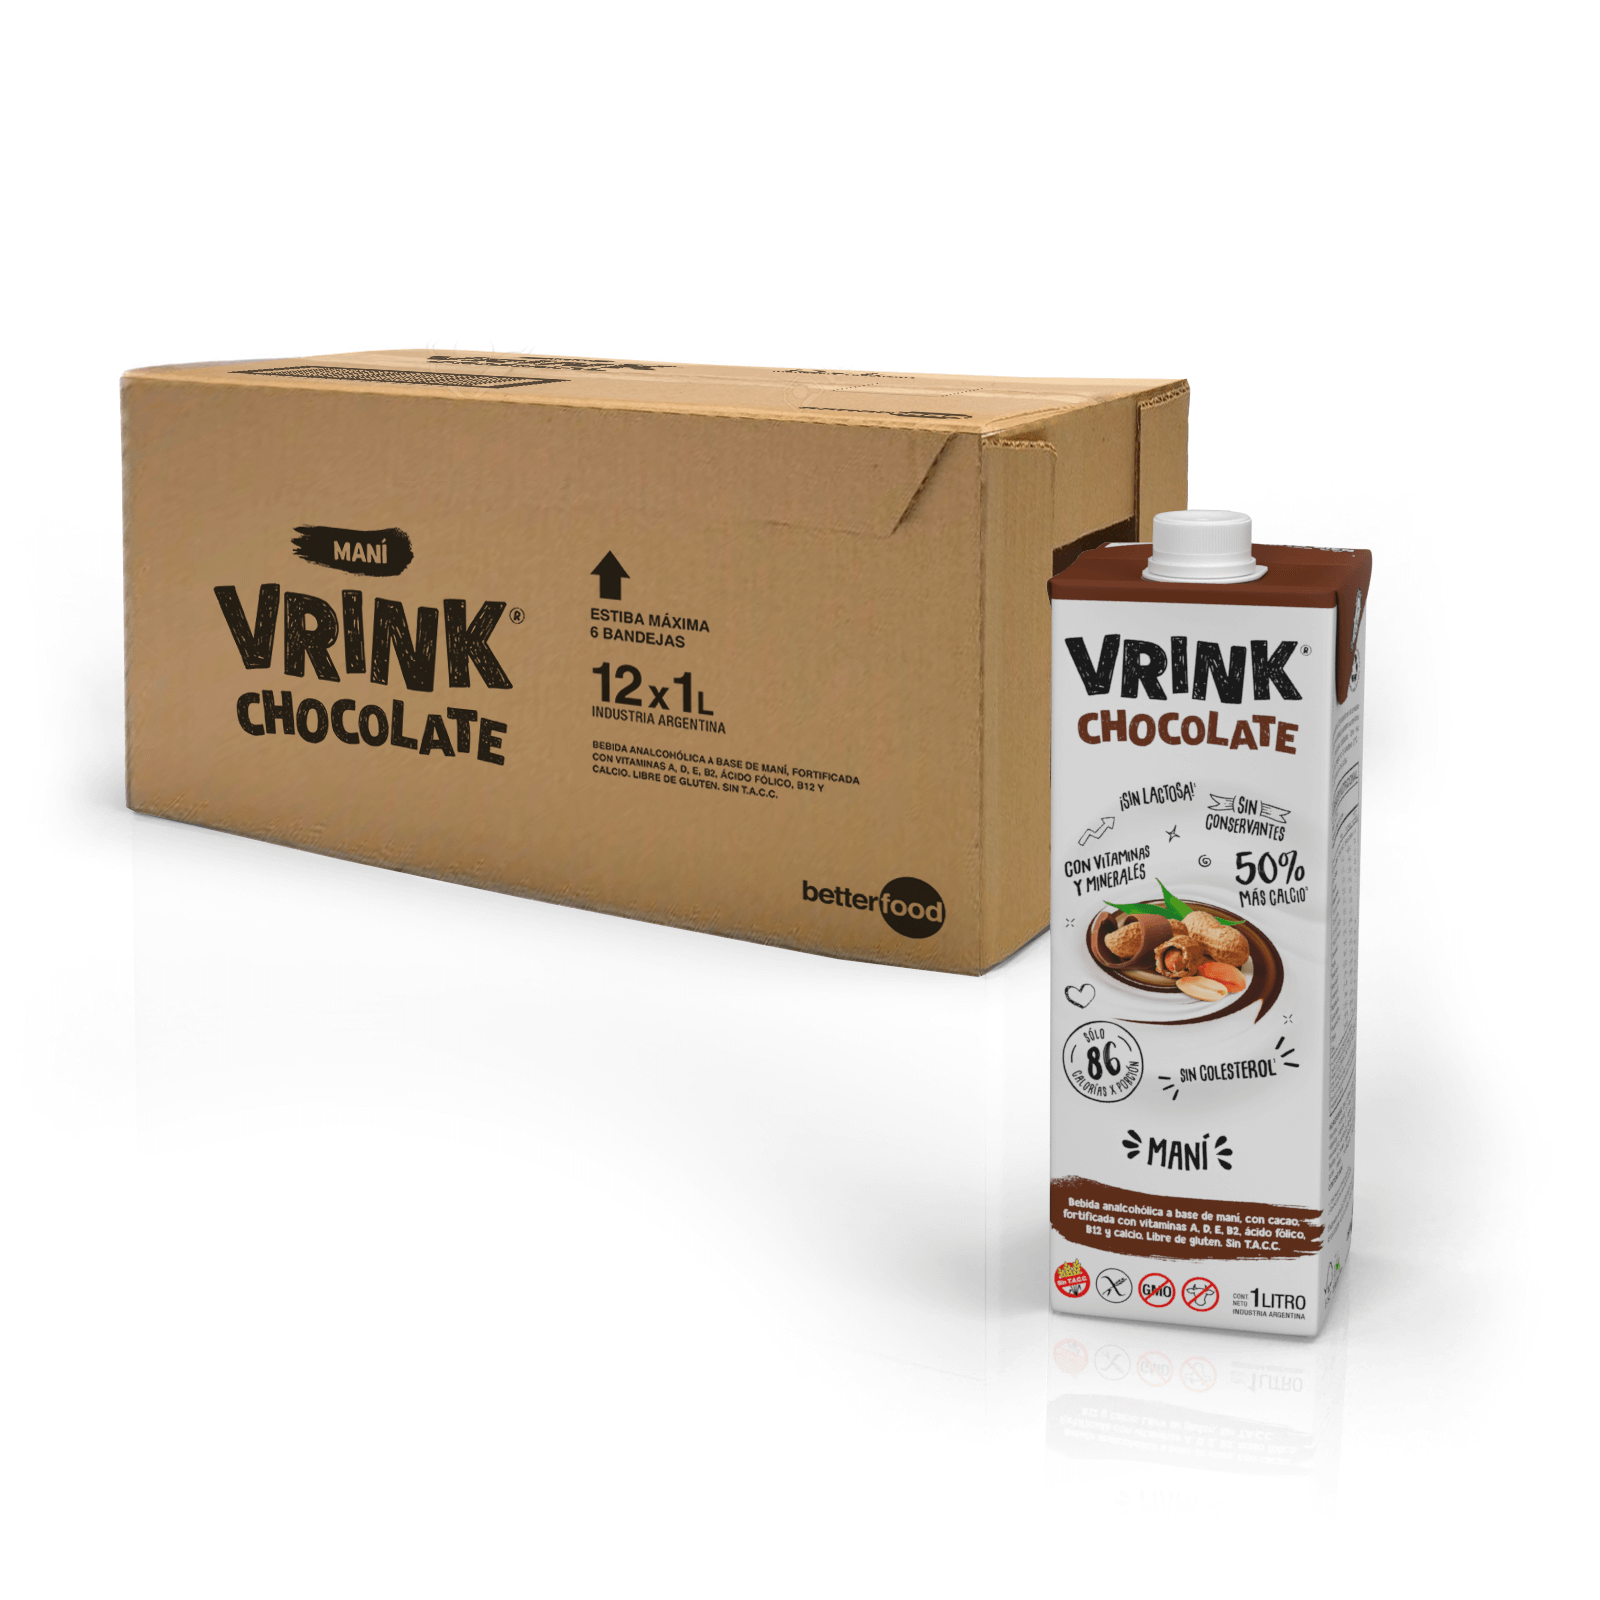 Pack x12 de Vrink Chocolate de maní